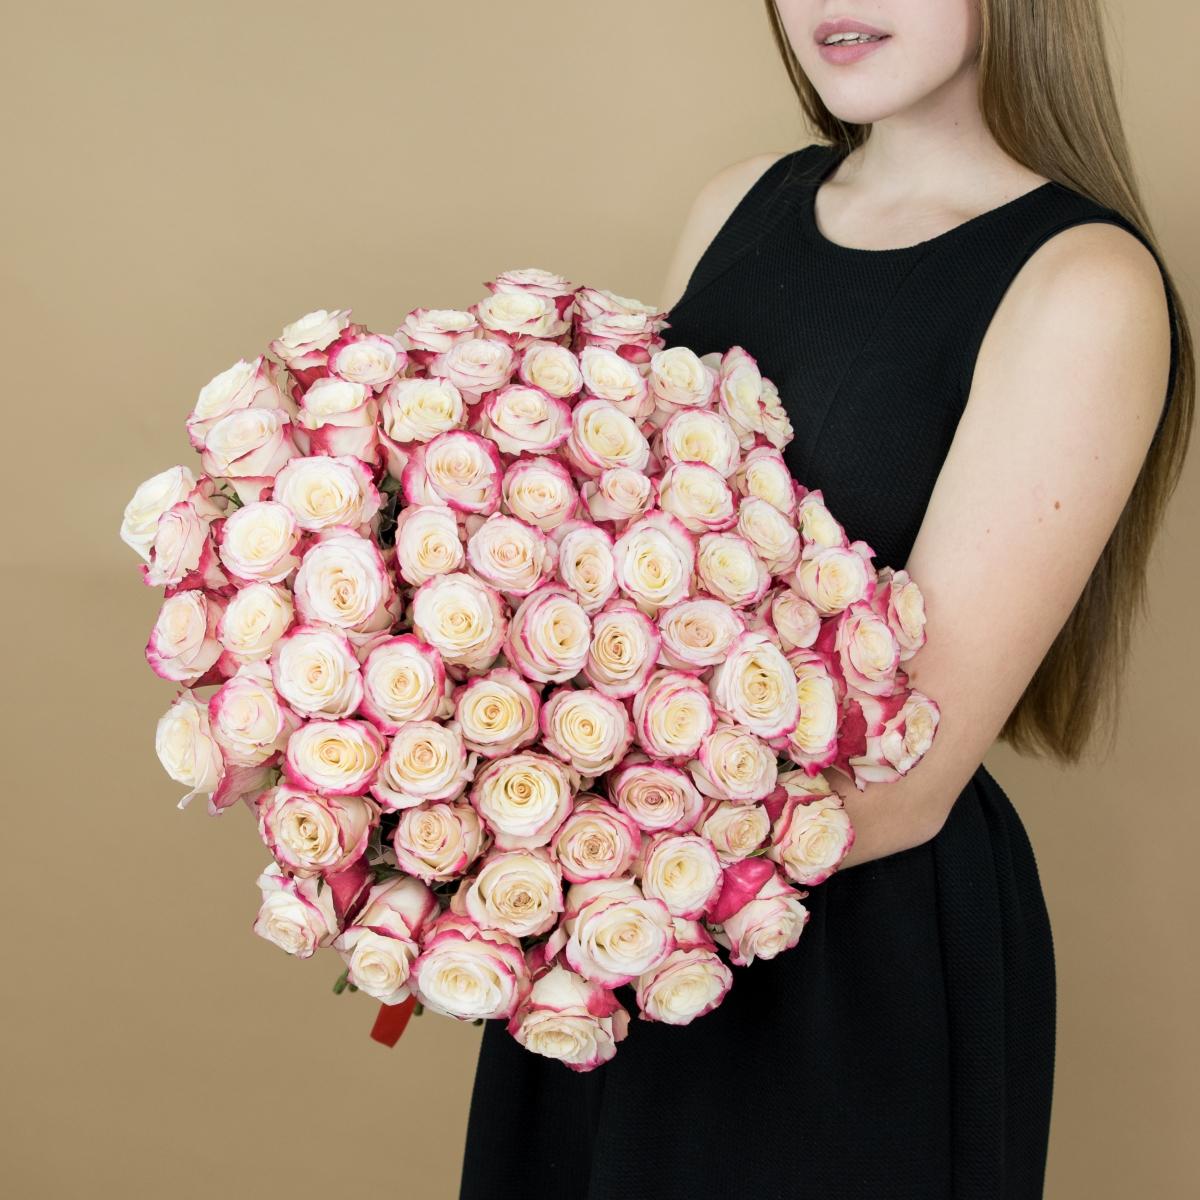 Розы красно-белые 101 шт. (40 см) код товара  8010sochi